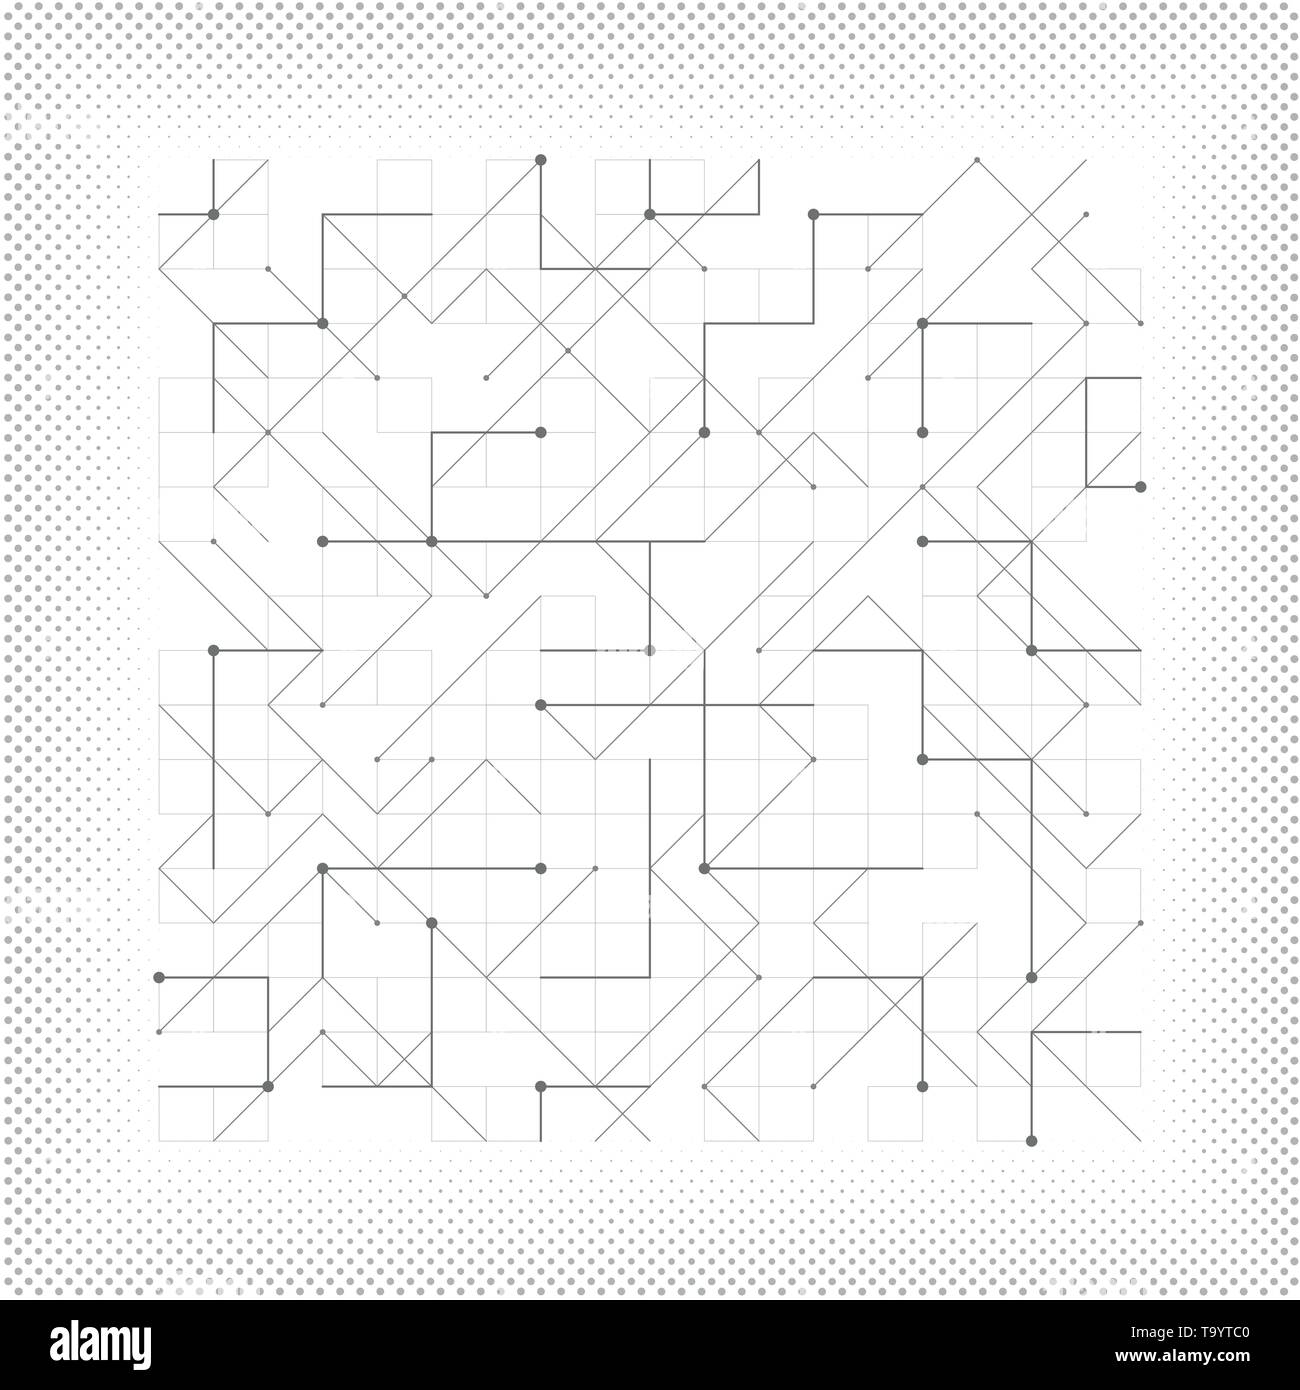 Abstract vector graue Linie geometrische Dreieck Quadrat gepunktete Tech minimal Design Cover. Sie können für tech Cover Design, ad, Poster, Artwork verwenden. Stock Vektor